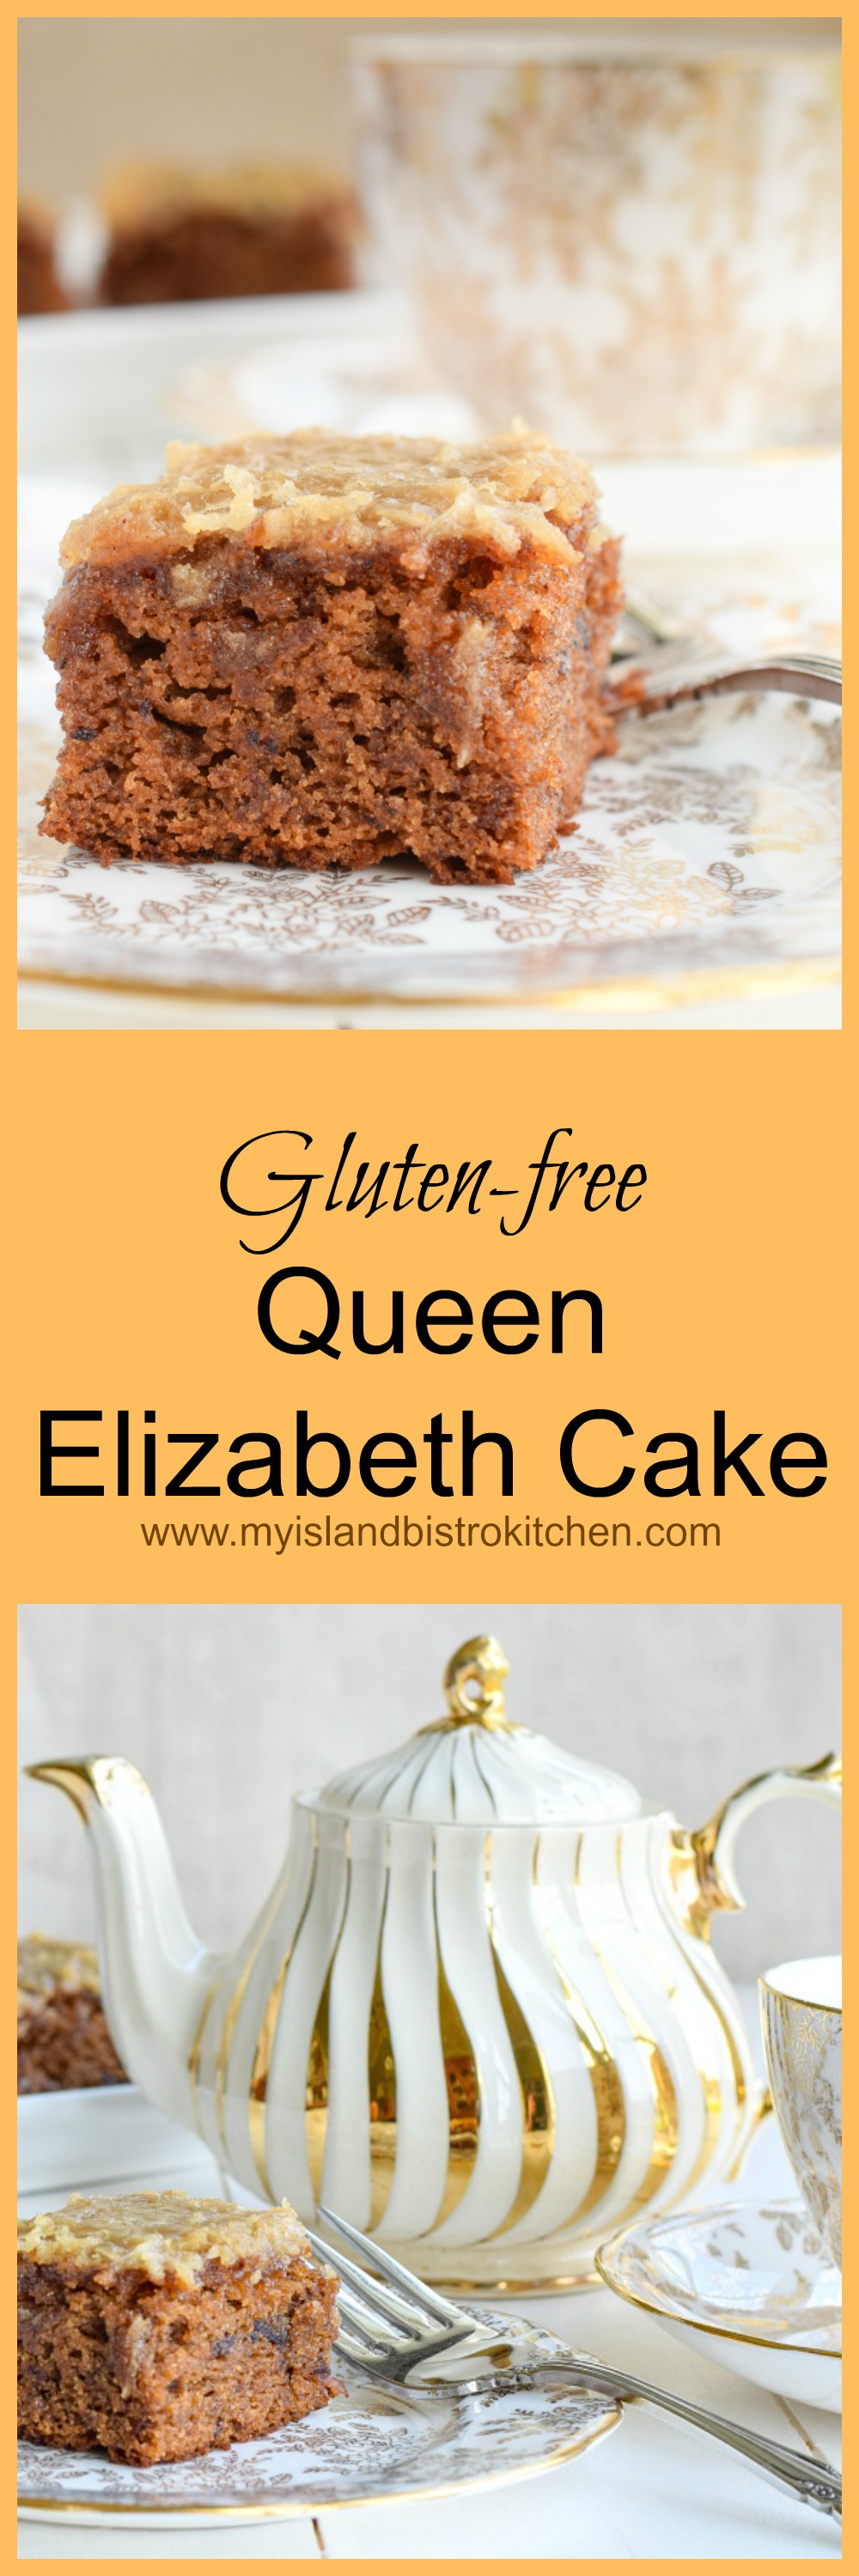 Gluten-free Queen Elizabeth Cake